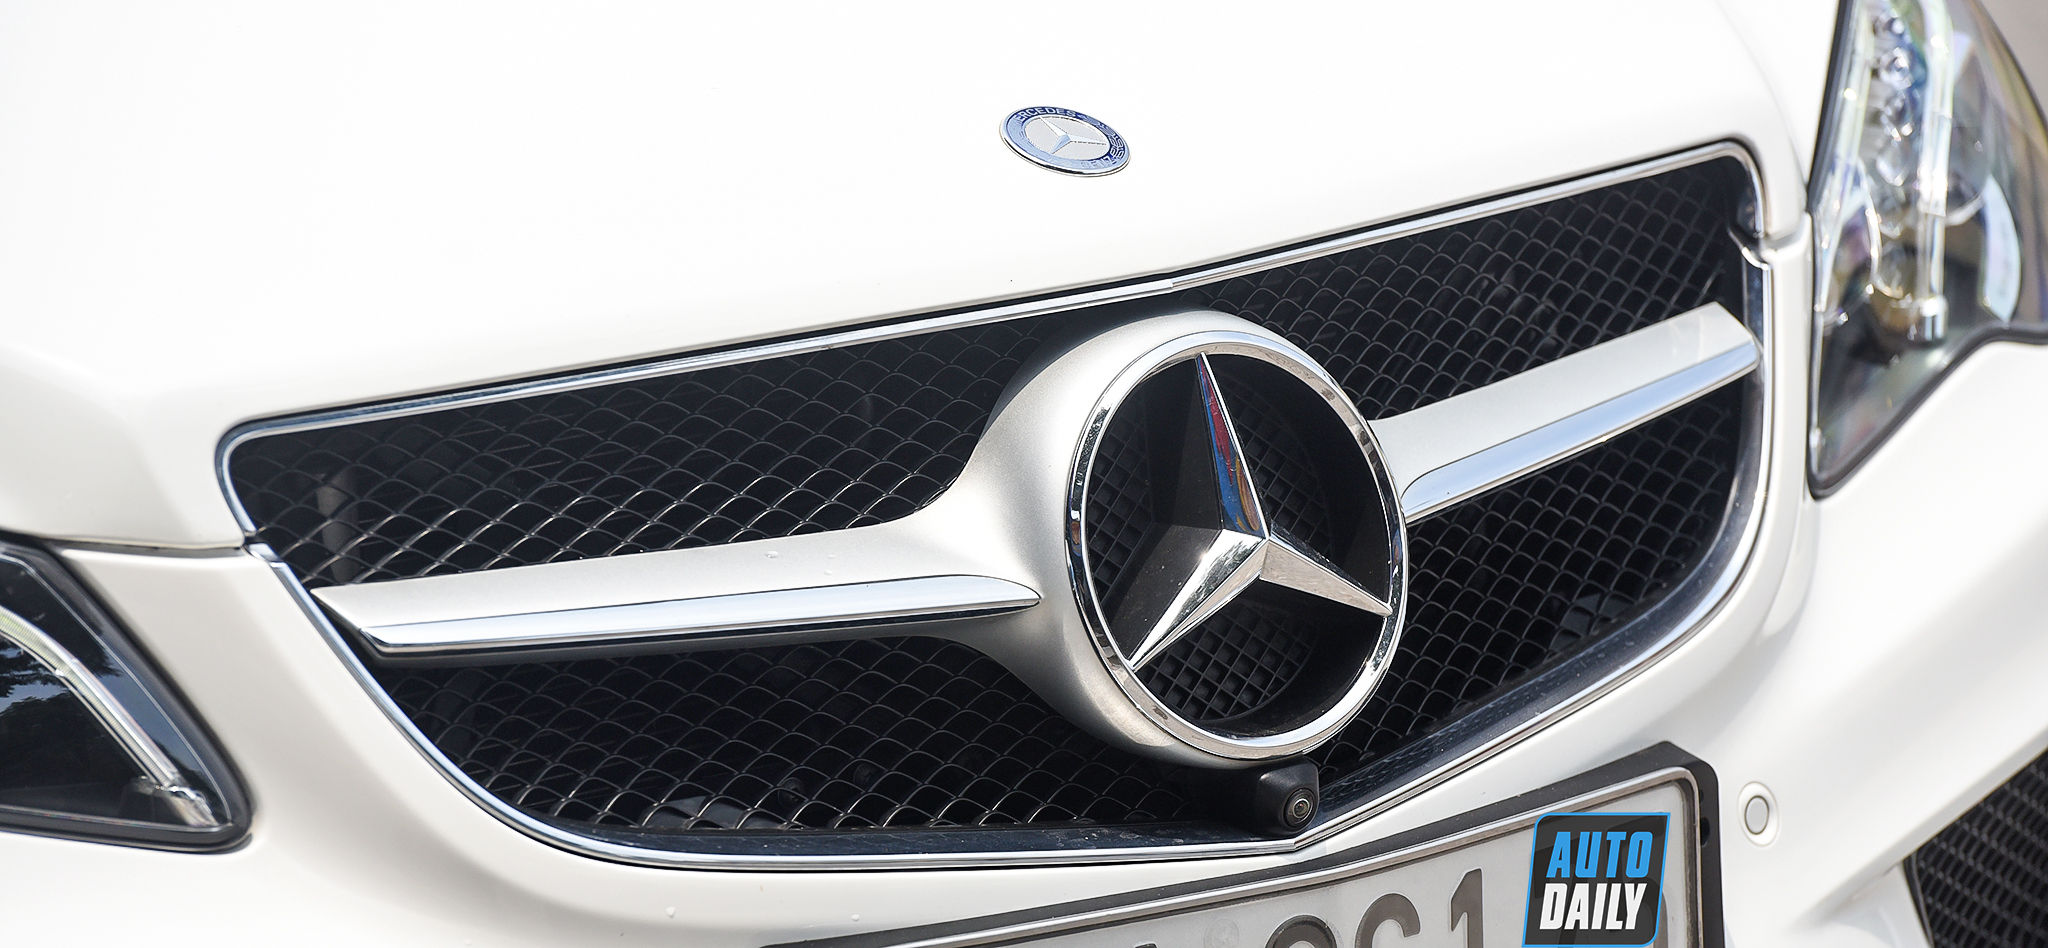 Mui trần hàng hiếm Mercedes-Benz E400 Cabriolet lên sàn xe cũ giá hơn 2 tỷ adt-4756-copy.jpg